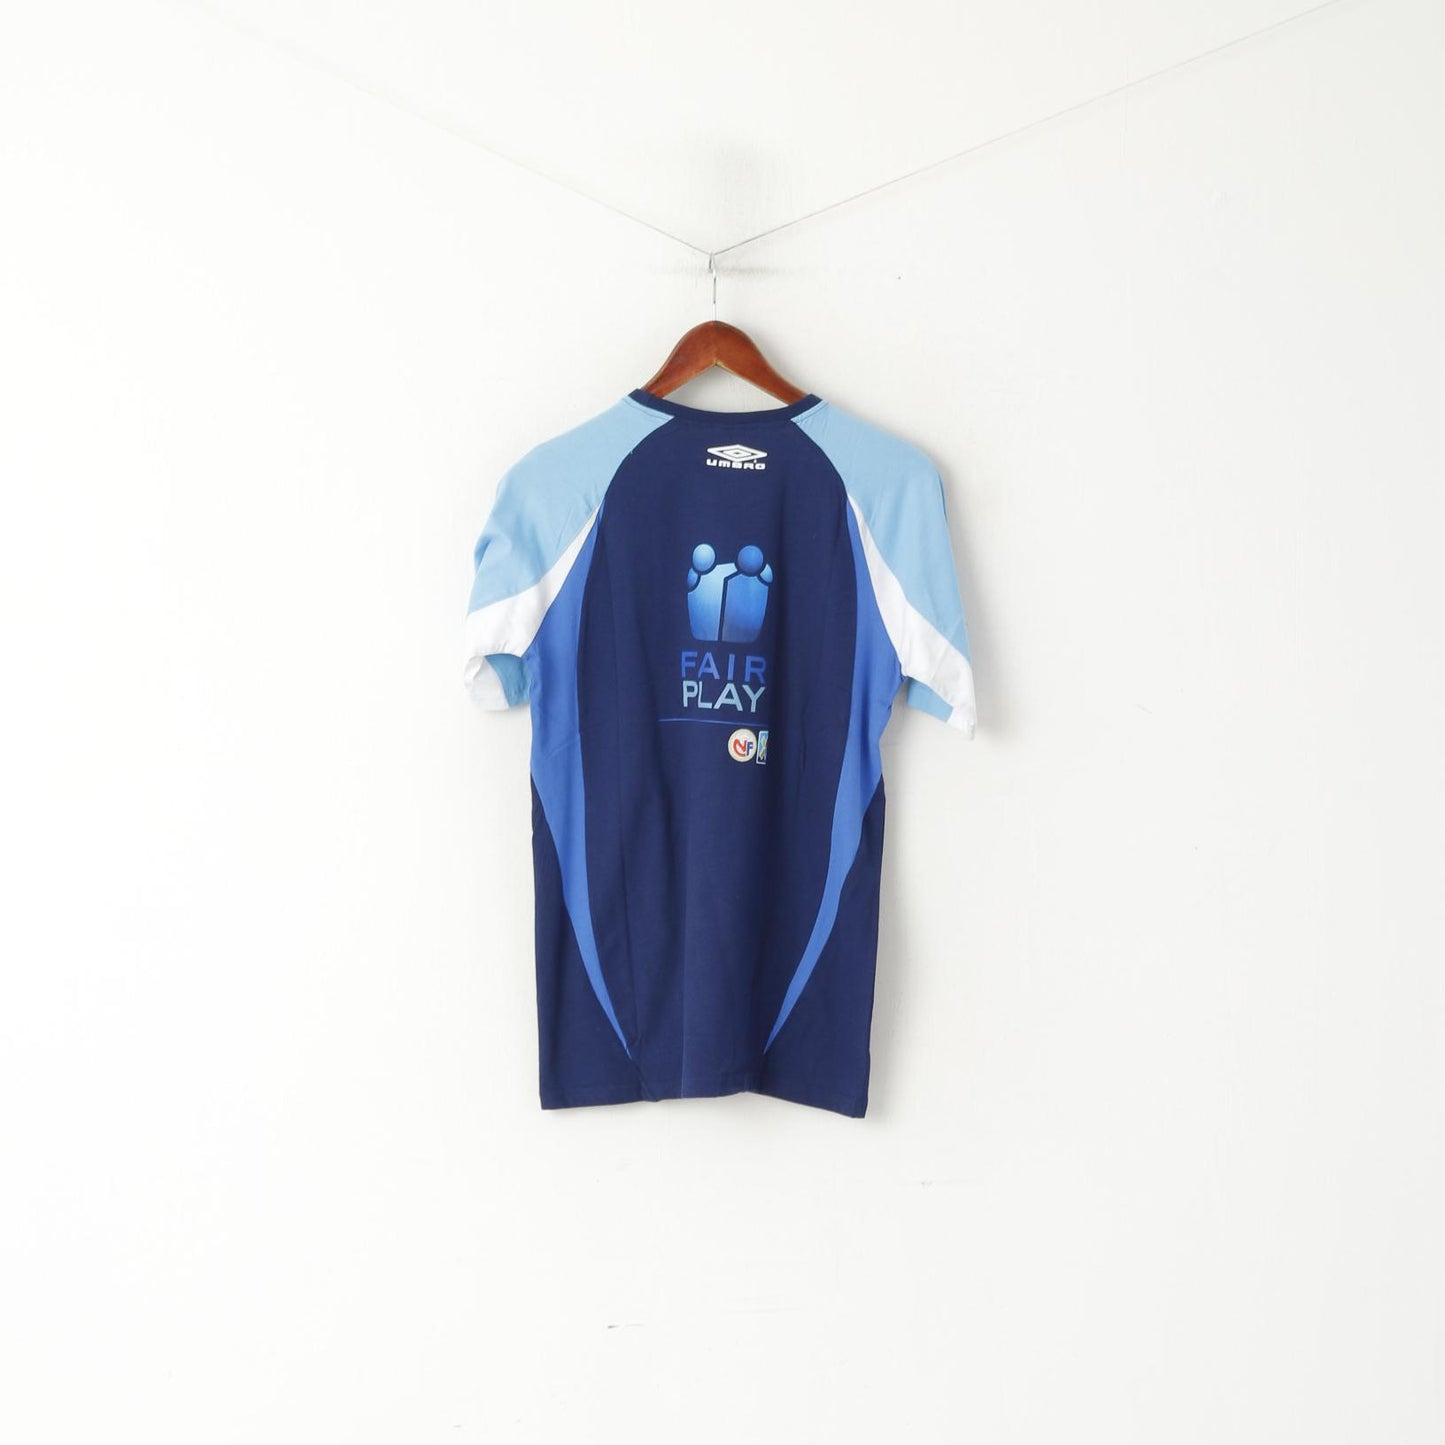 New Umbro Men M T-Shirt Blue Cotton Fair Play Football Sportswear Top